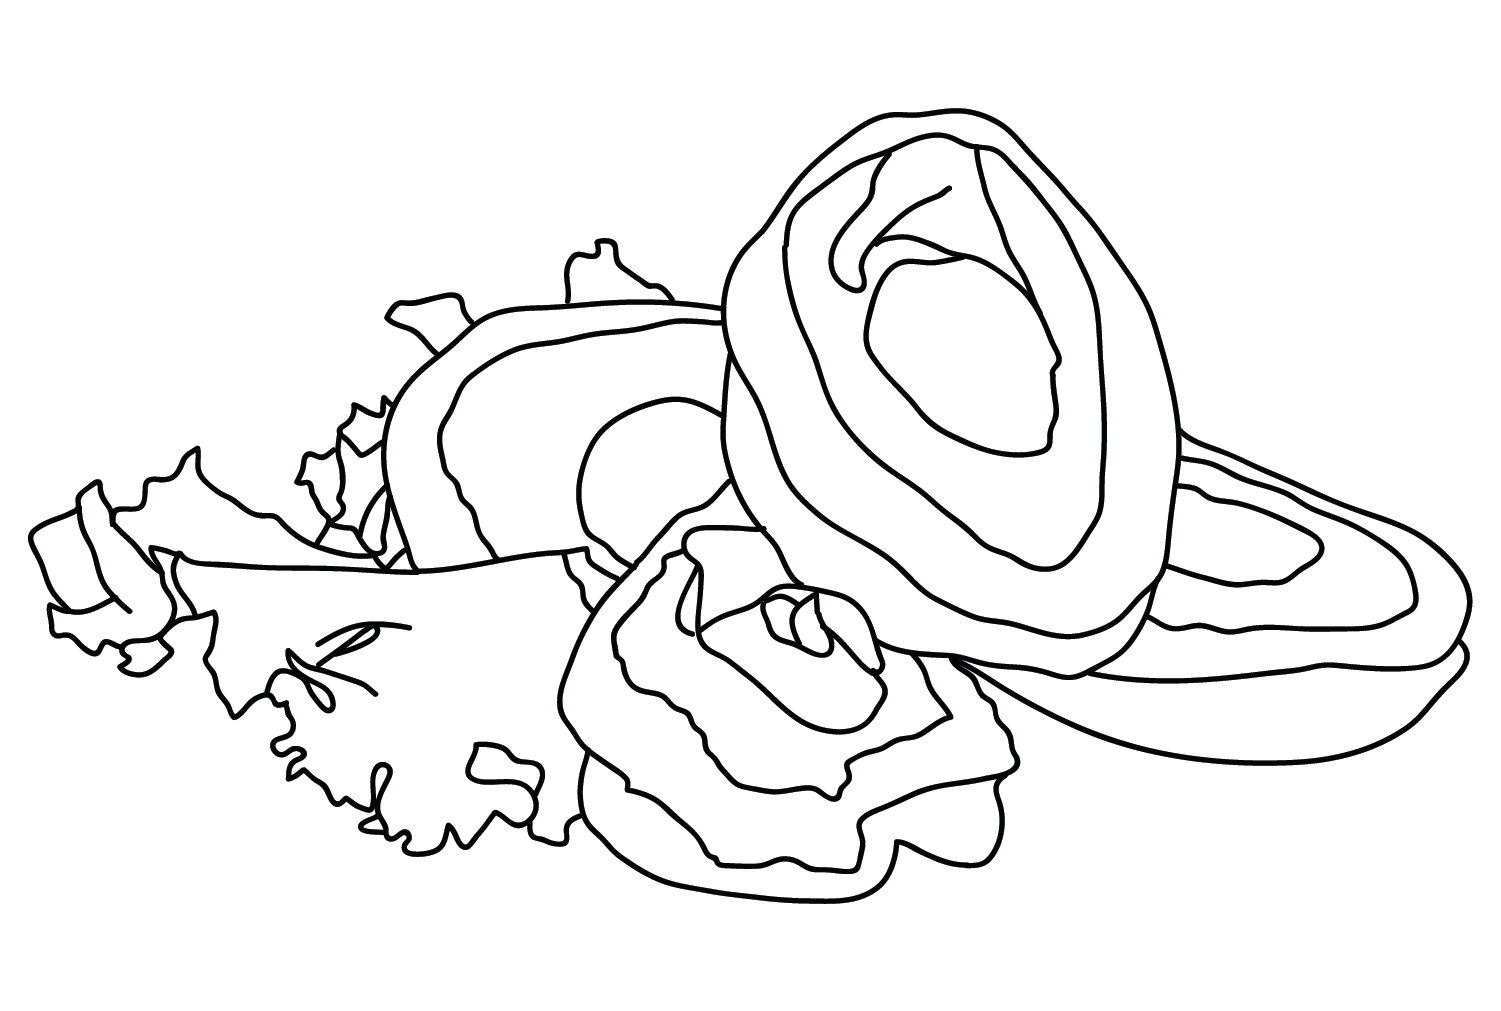 Раскраска с рисунком морского ушка от Abalone